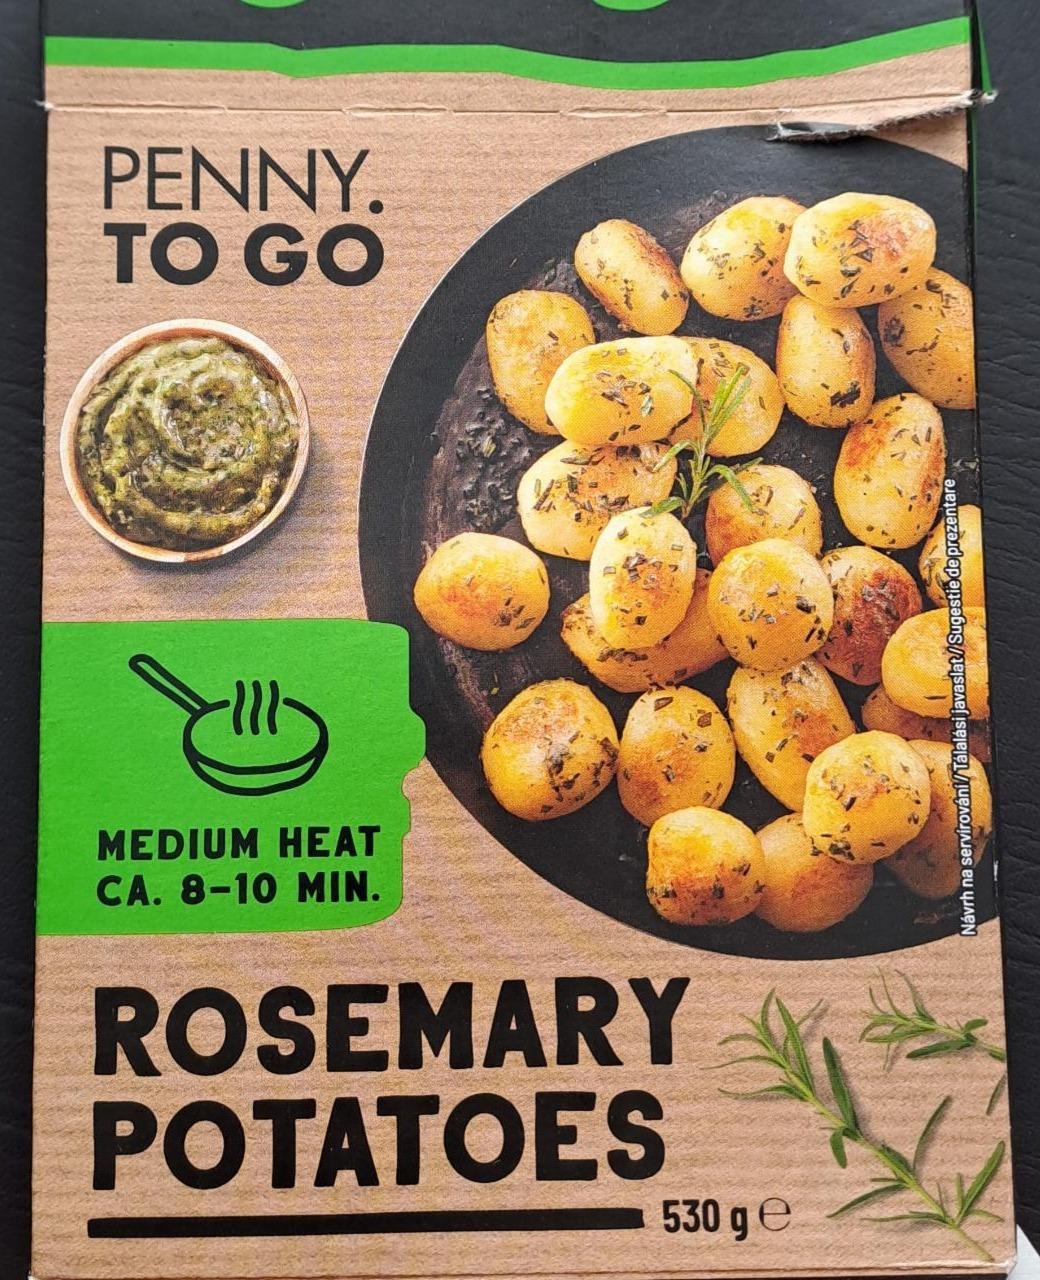 Képek - Rosemary Potatoes Penny. To go